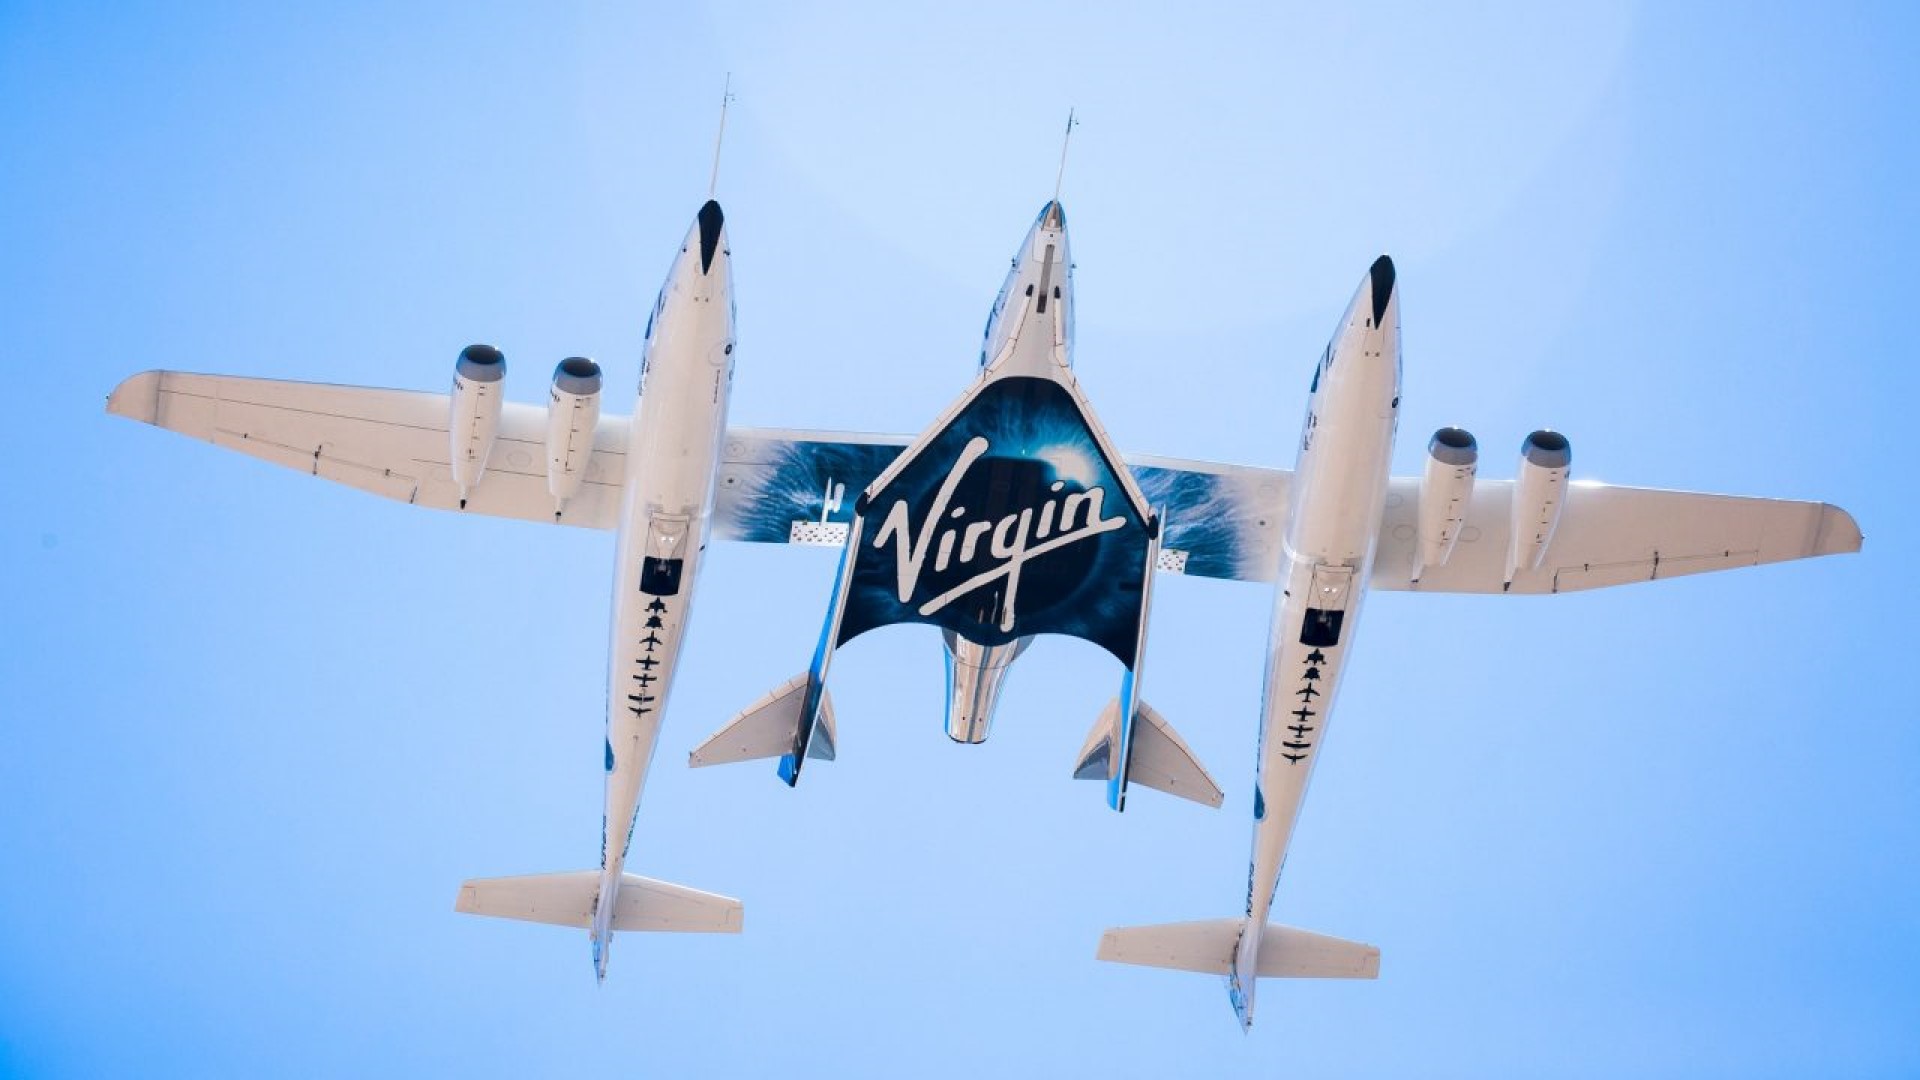 Virgin Galactic ประกาศขายตั๋วทริปท่องเที่ยวขอบอวกาศครั้งใหม่เกือบ 15 ล้านบาท